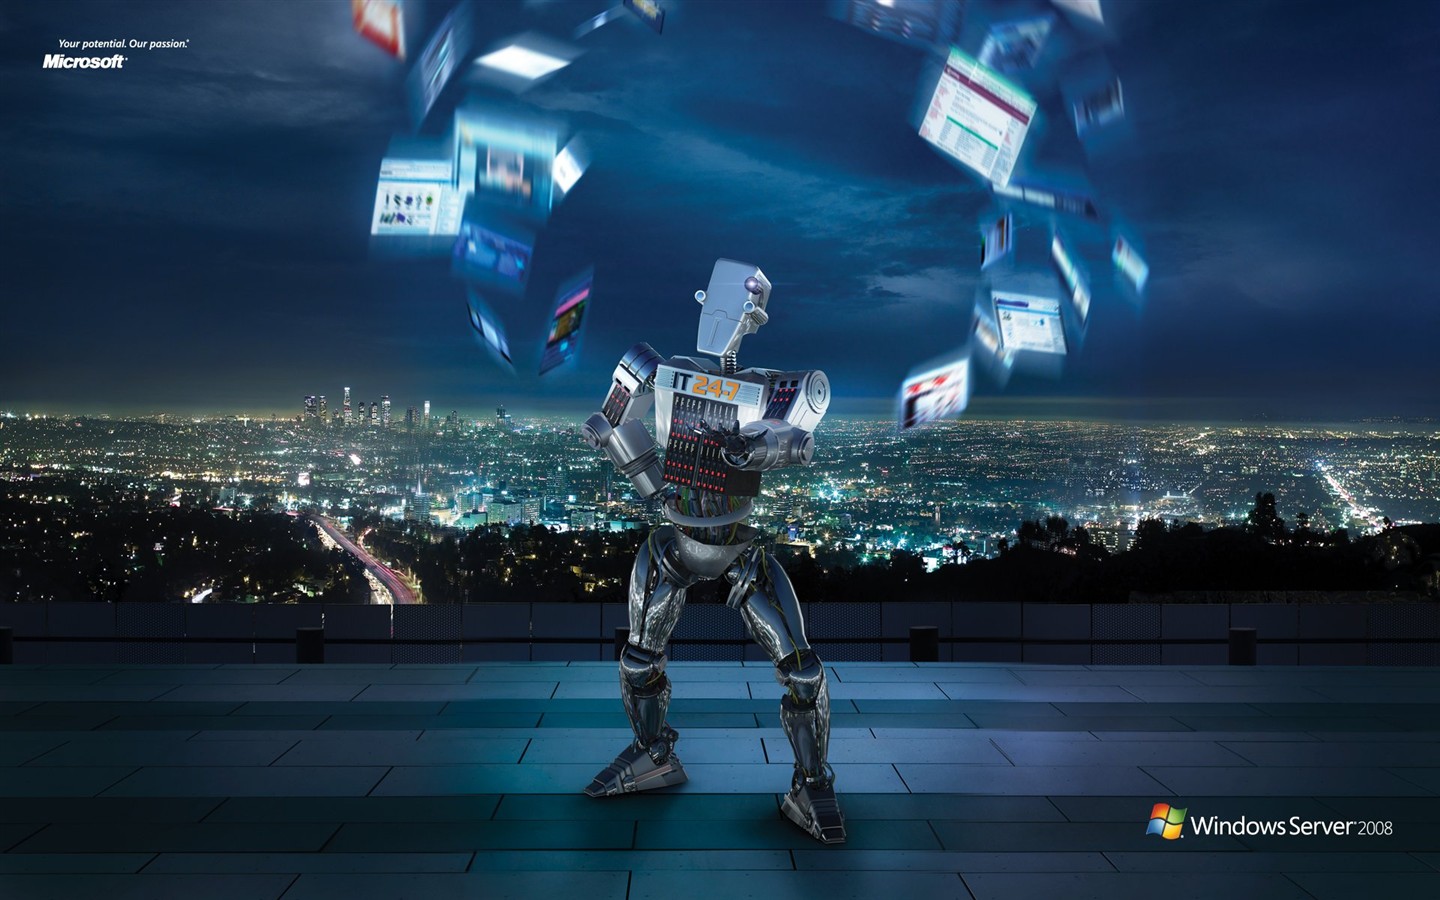 Windows IT Robot ad #1 - 1440x900